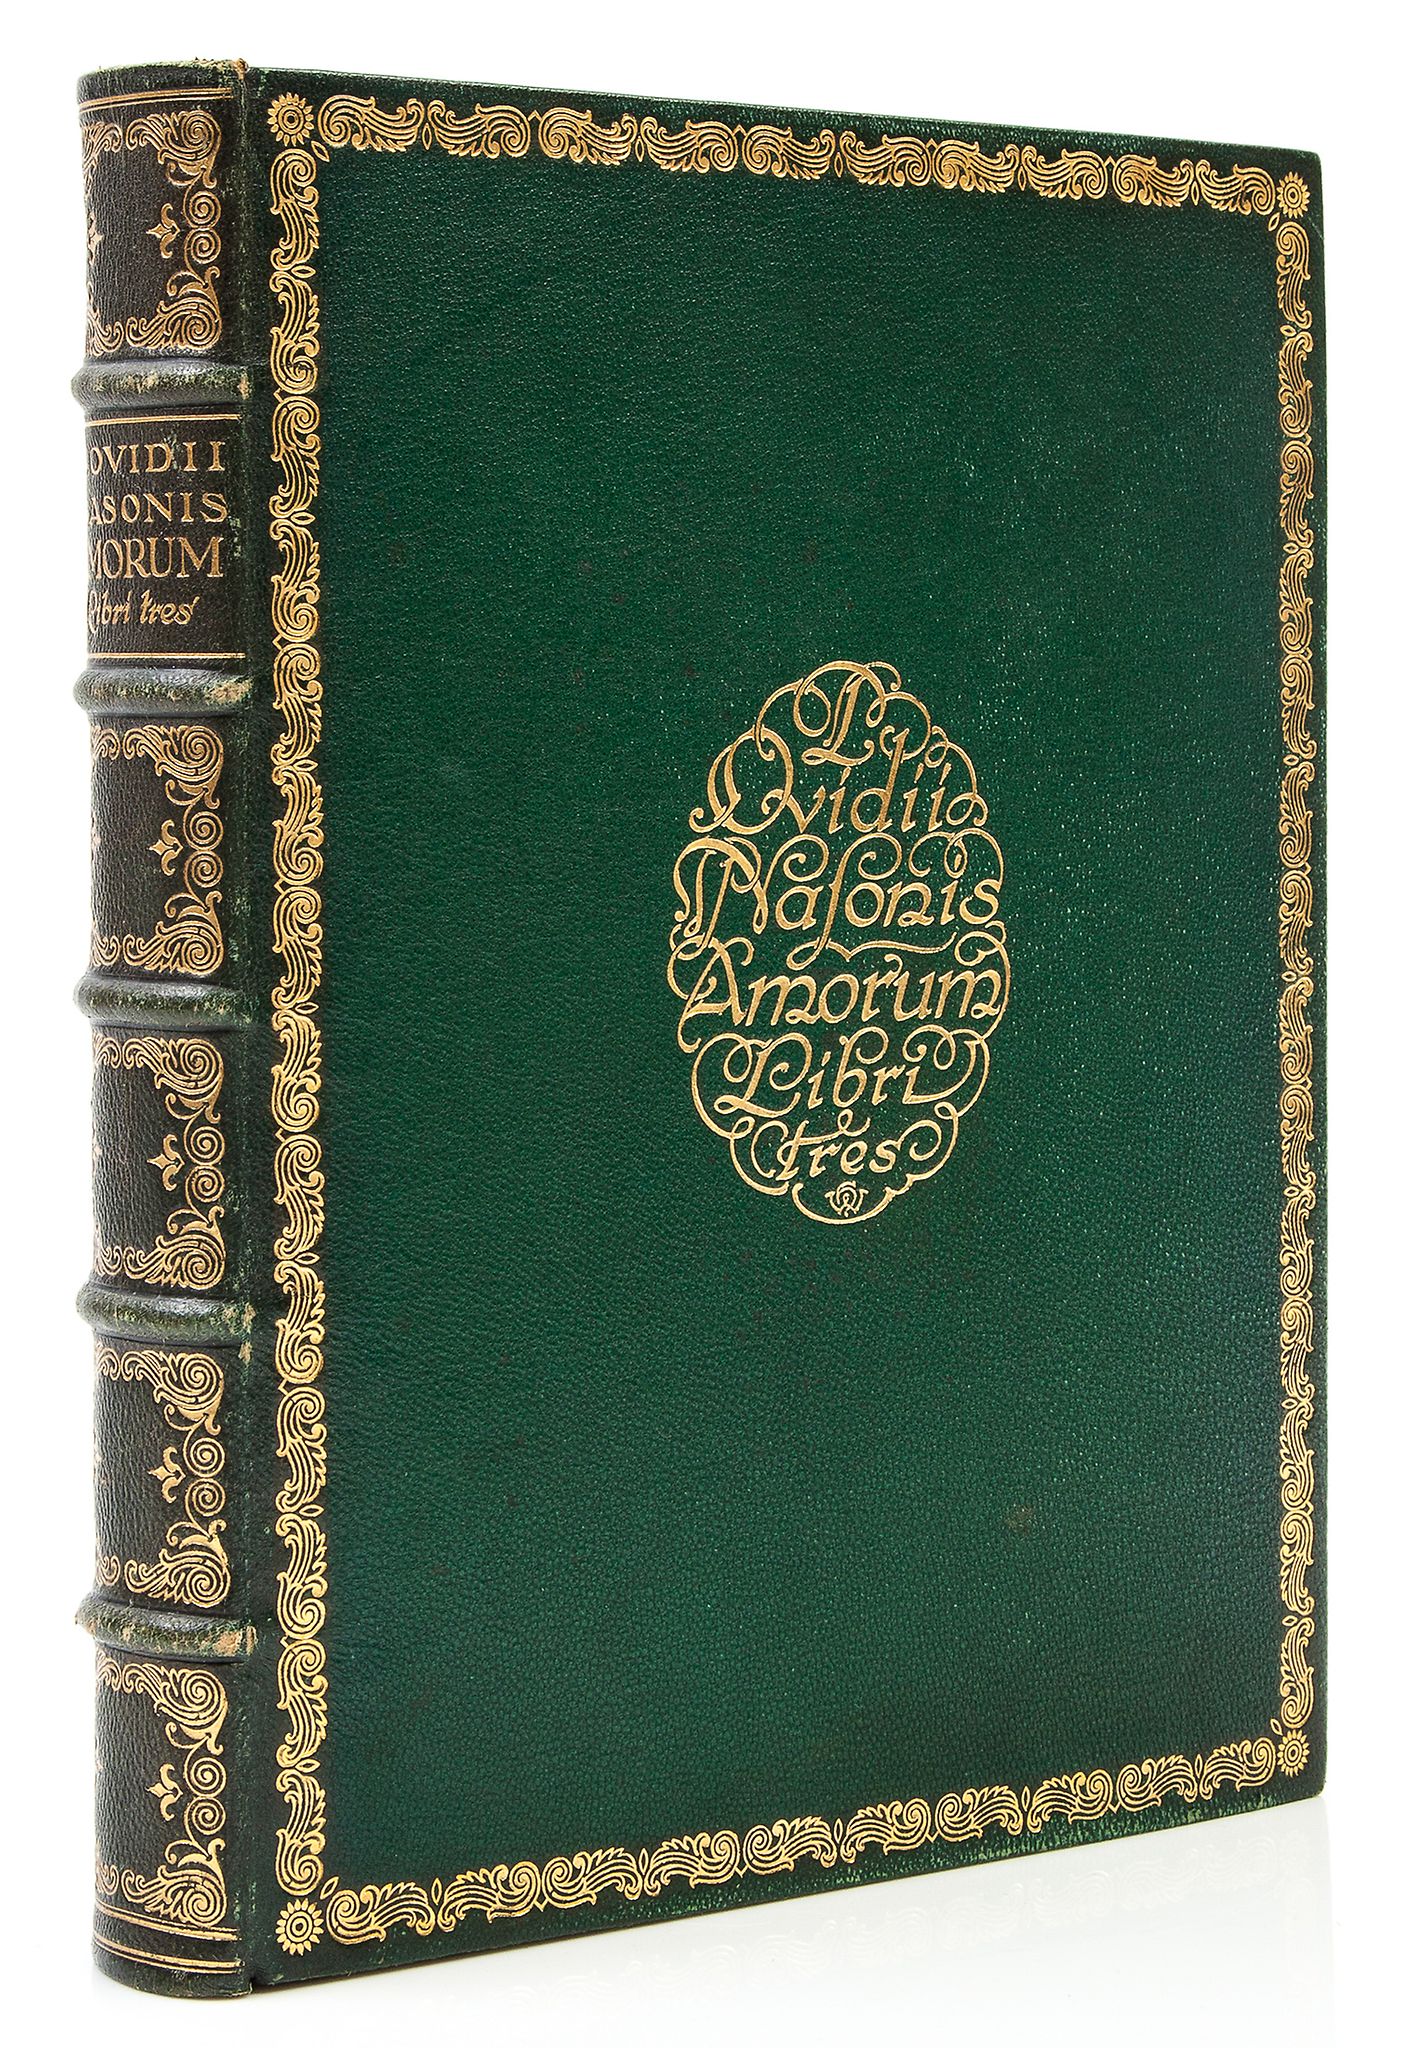 Ovidius Naso (Publius) - Amorum libri tres,  translated by Rudoph Schott,   number 30 of 50 copies